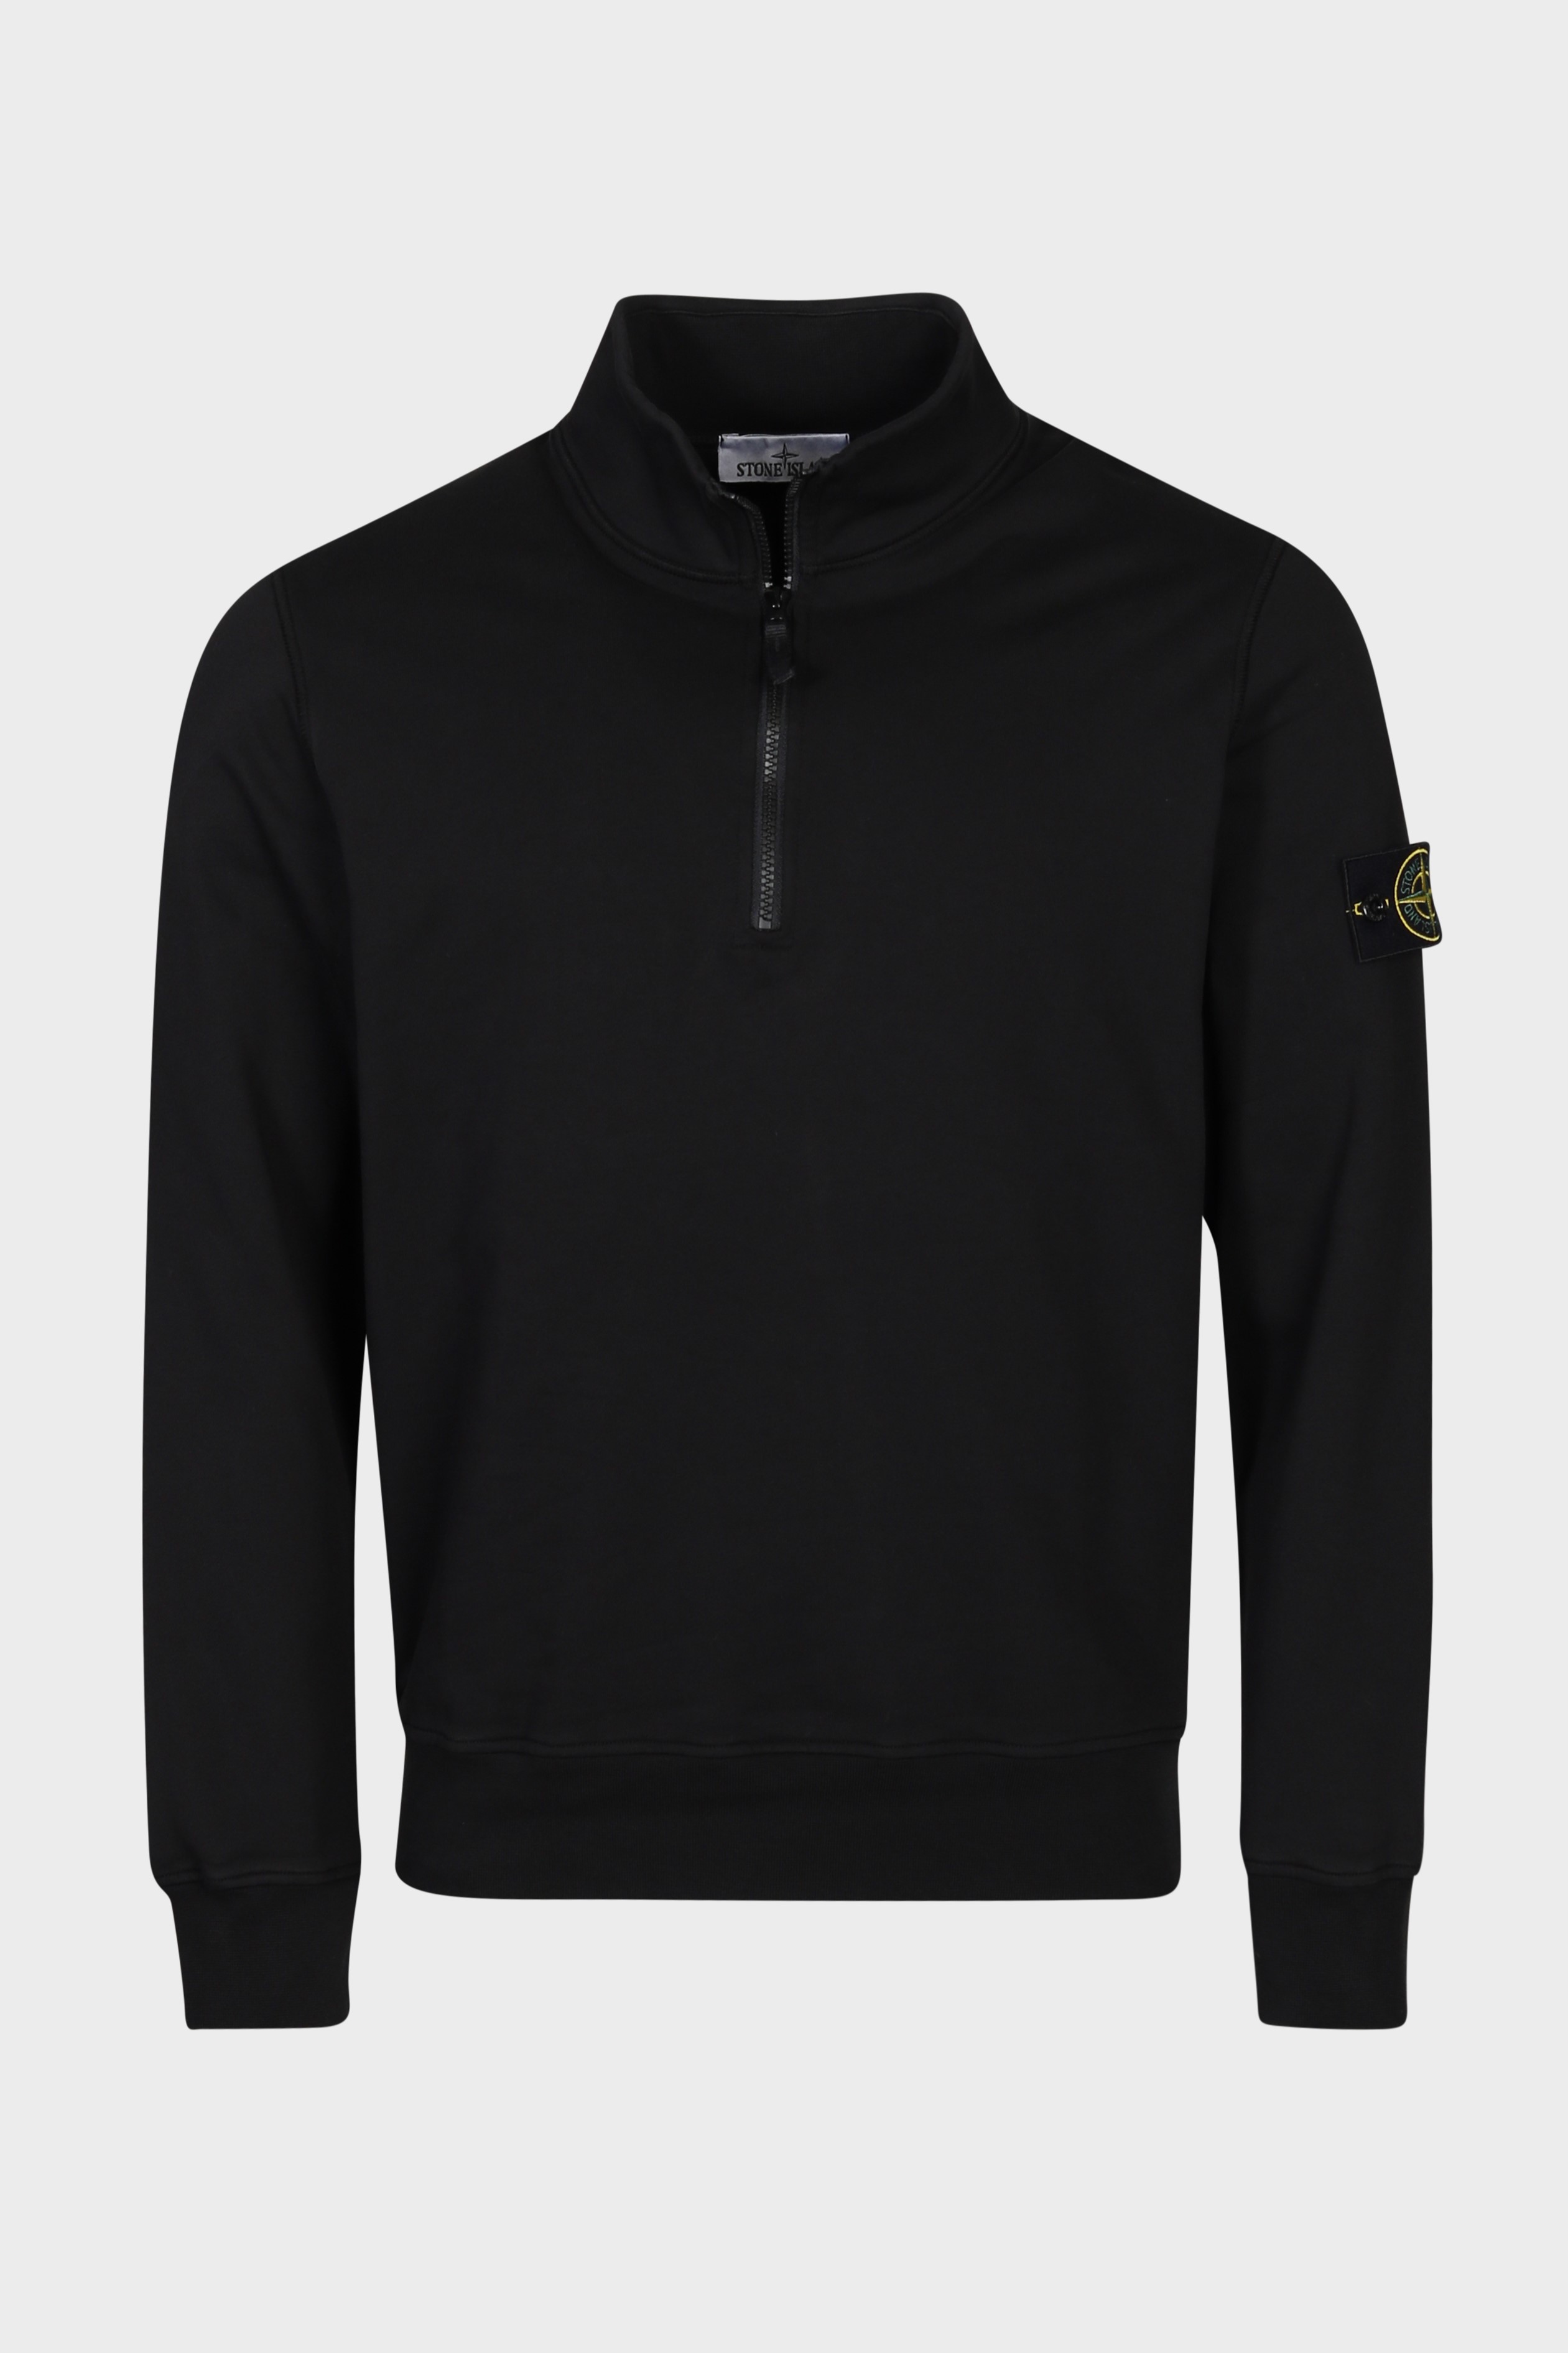 STONE ISLAND Half Zip Sweatshirt in Black S